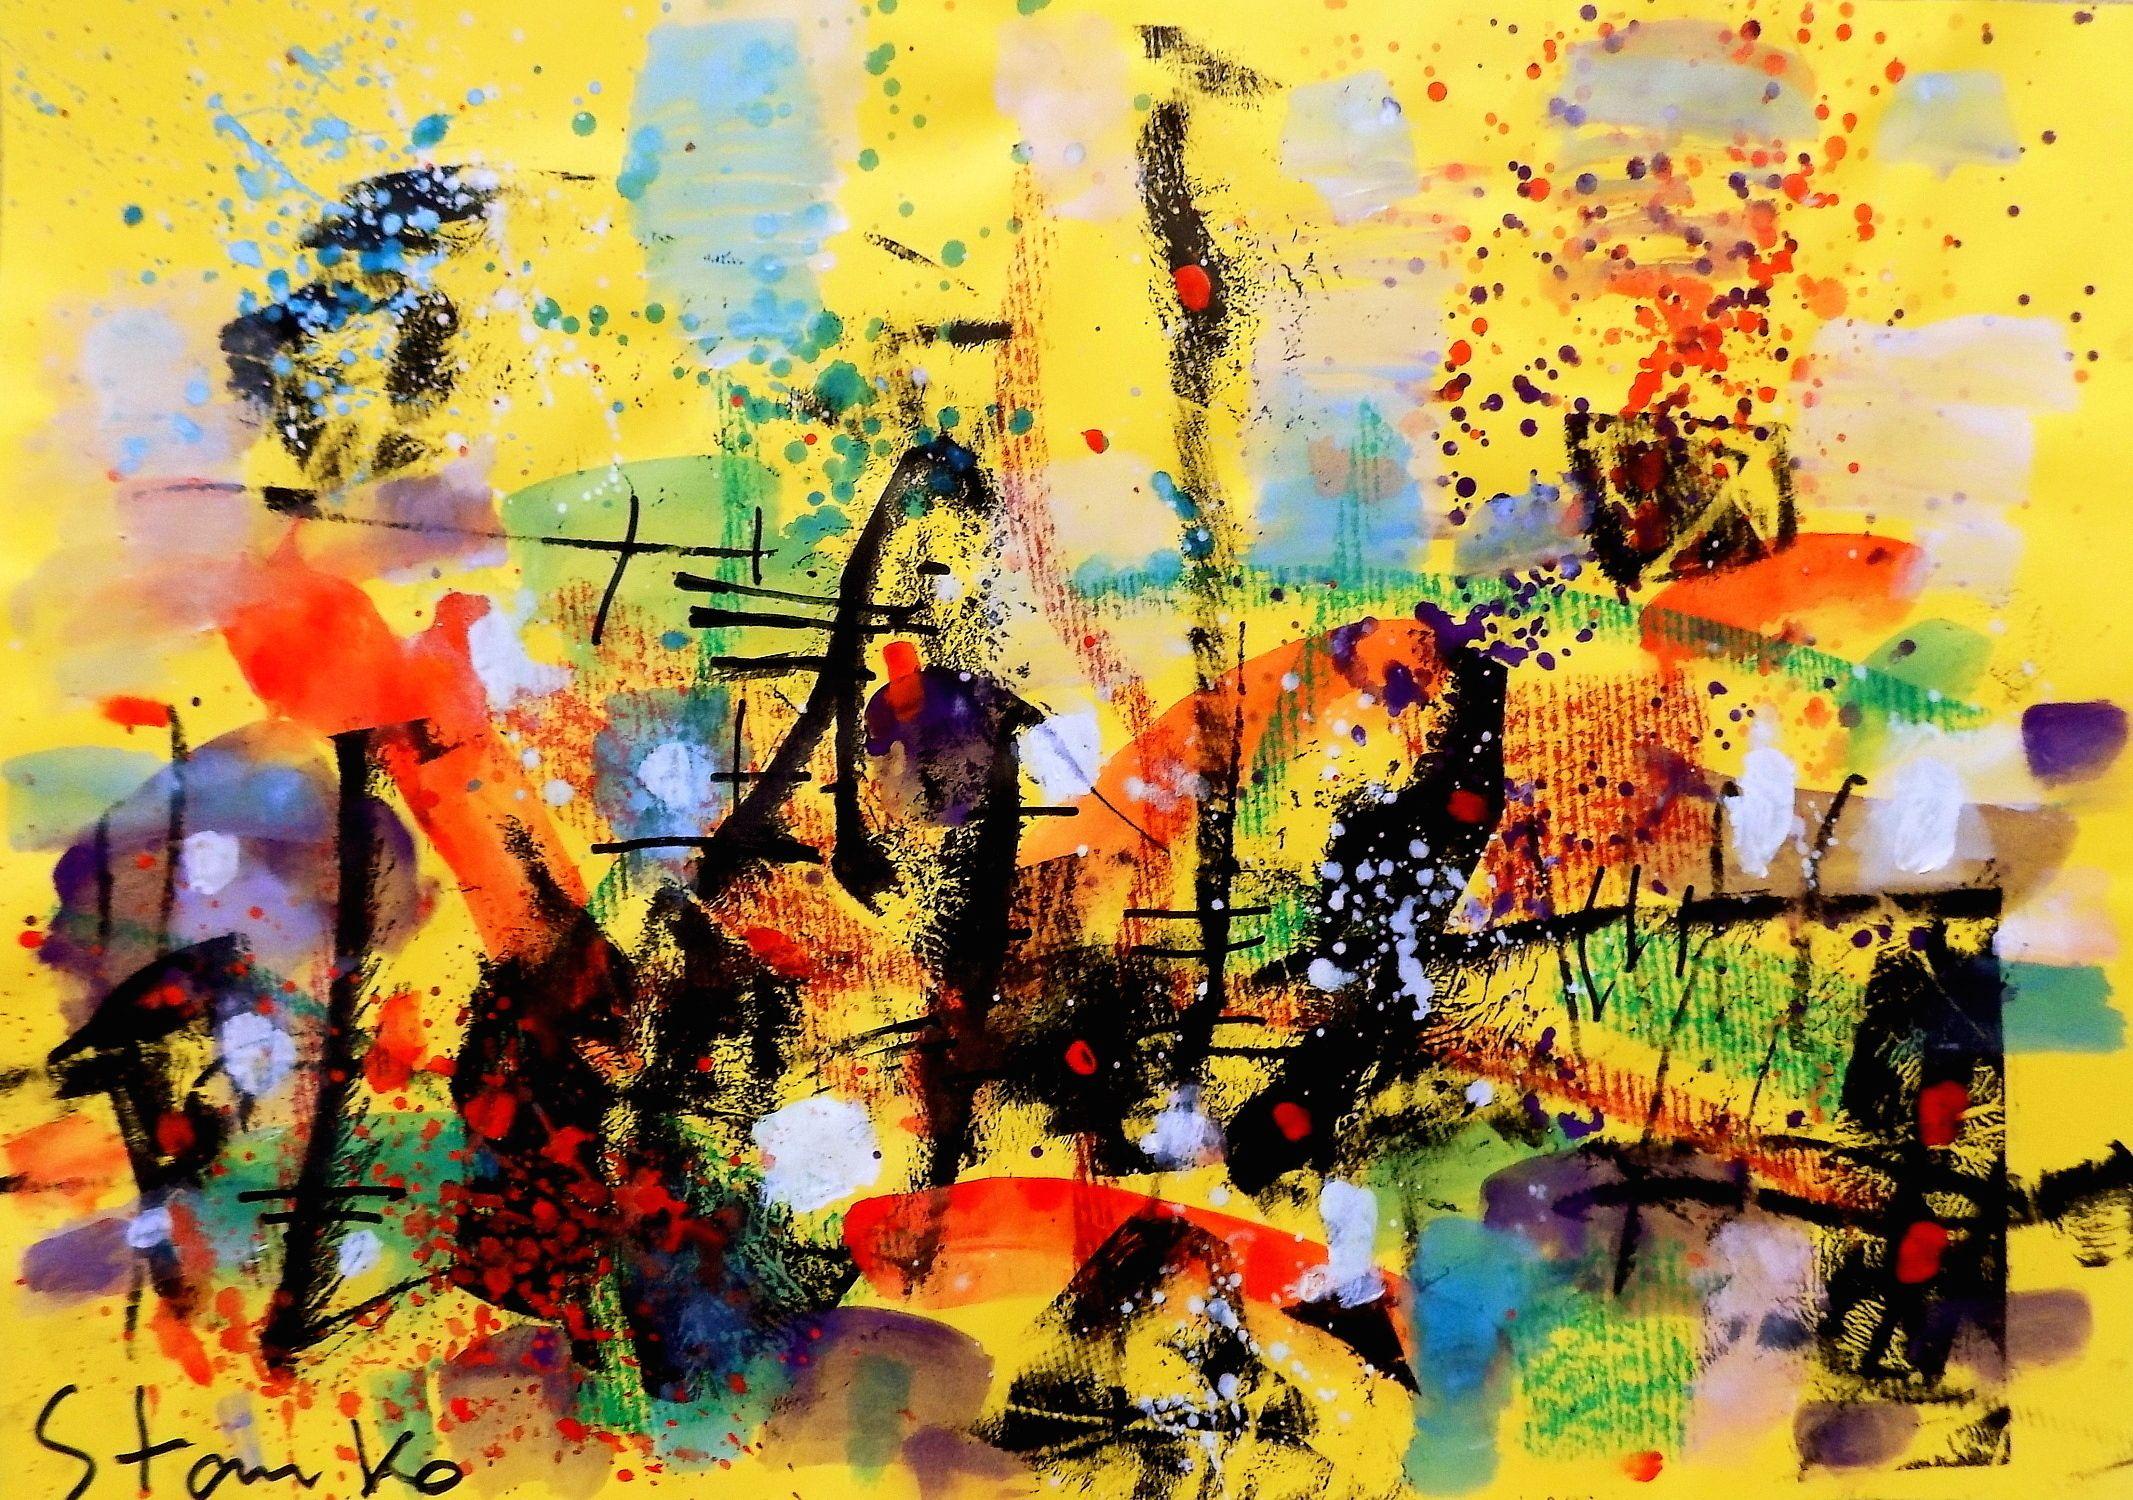 Landschaftsbild auf Jazz-LIV, Gemälde, Acryl auf Papier